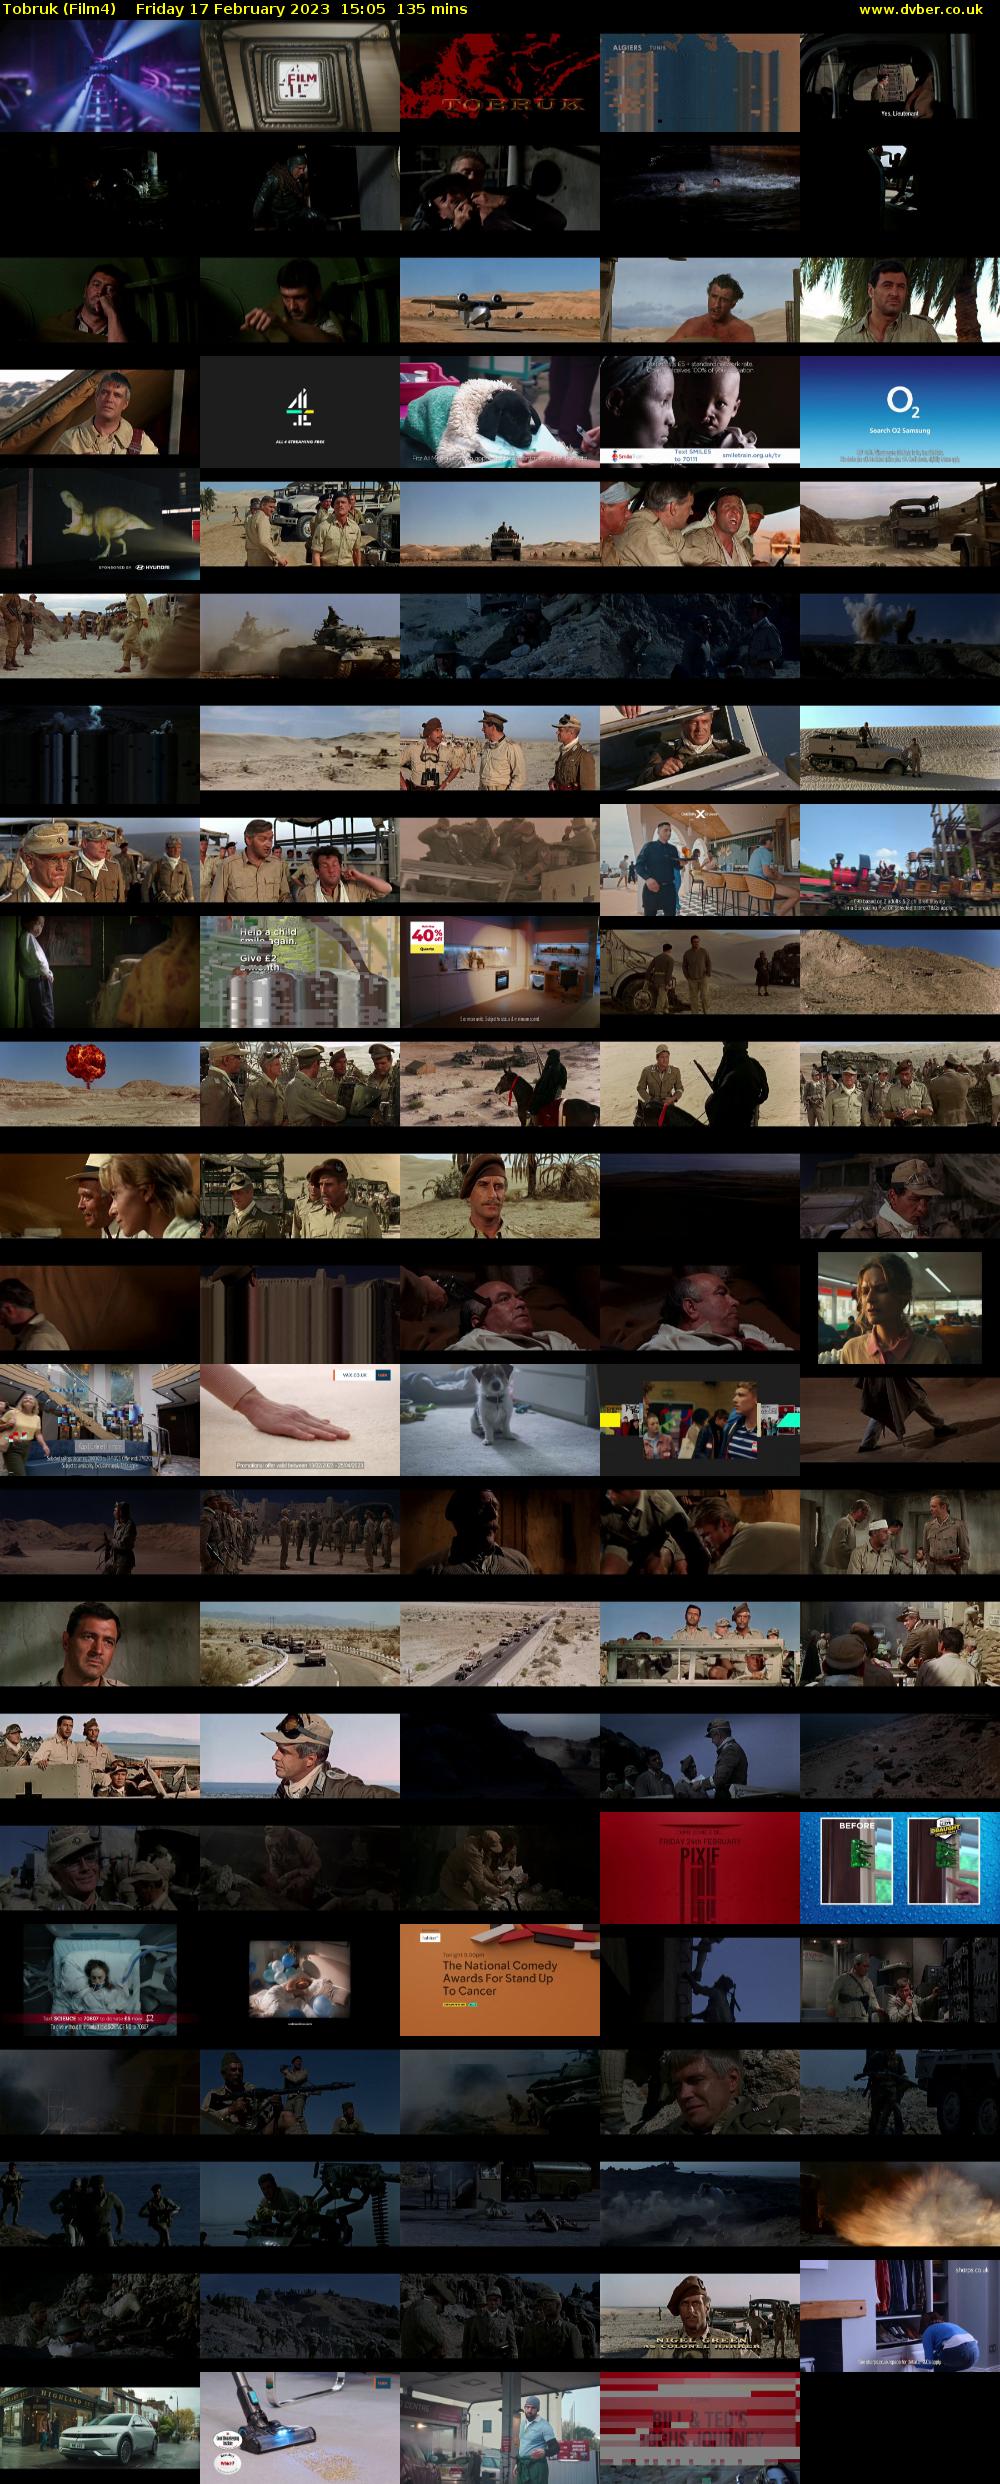 Tobruk (Film4) Friday 17 February 2023 15:05 - 17:20